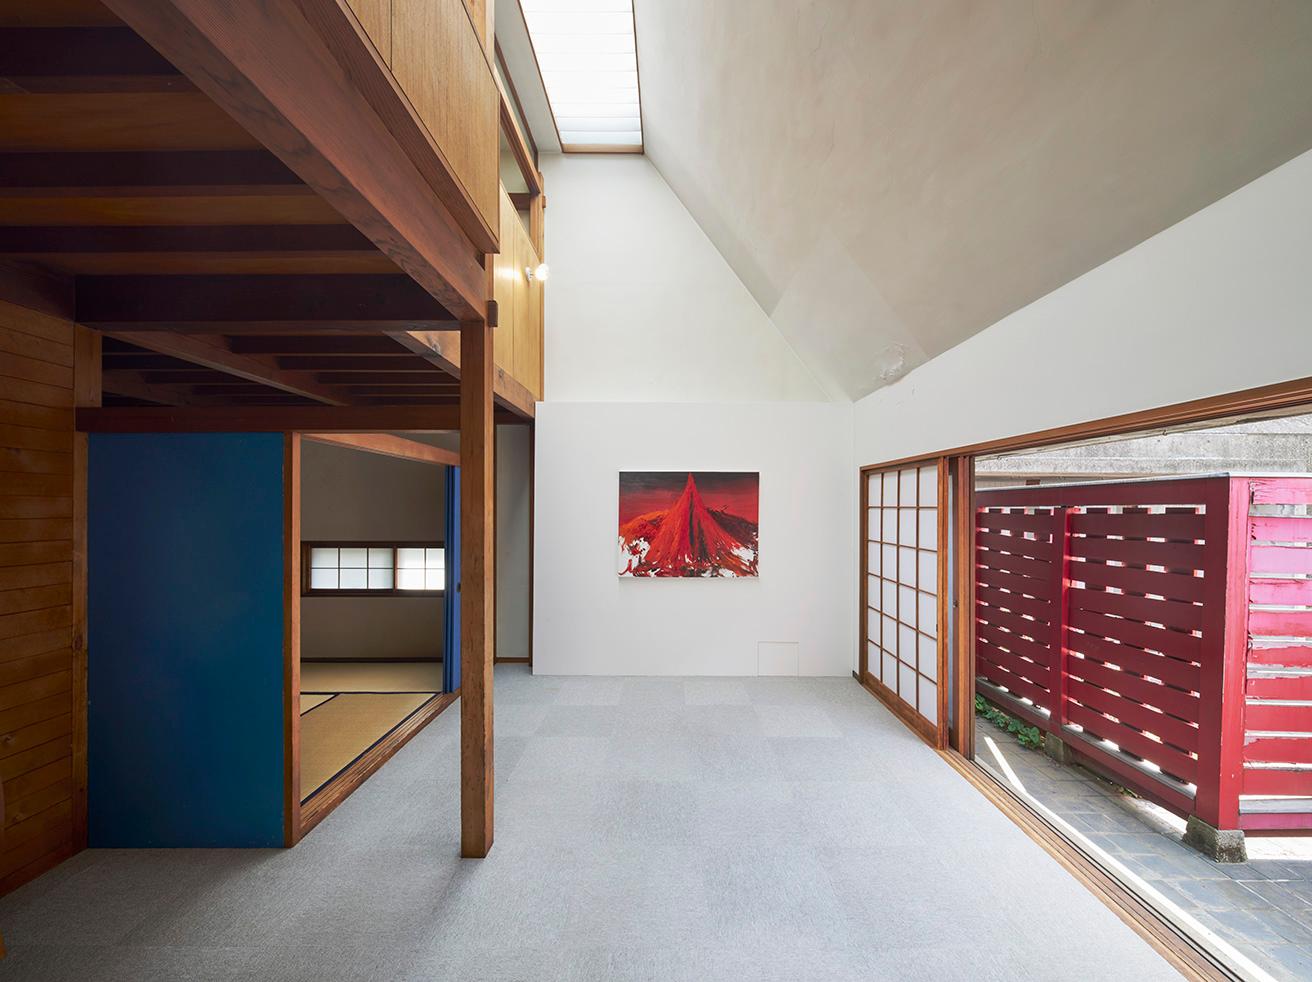 〈松川ボックス〉1階の居間に展示されたアニッシュ・カプーアの絵画作品。右側はテラス、左側は和室になる。